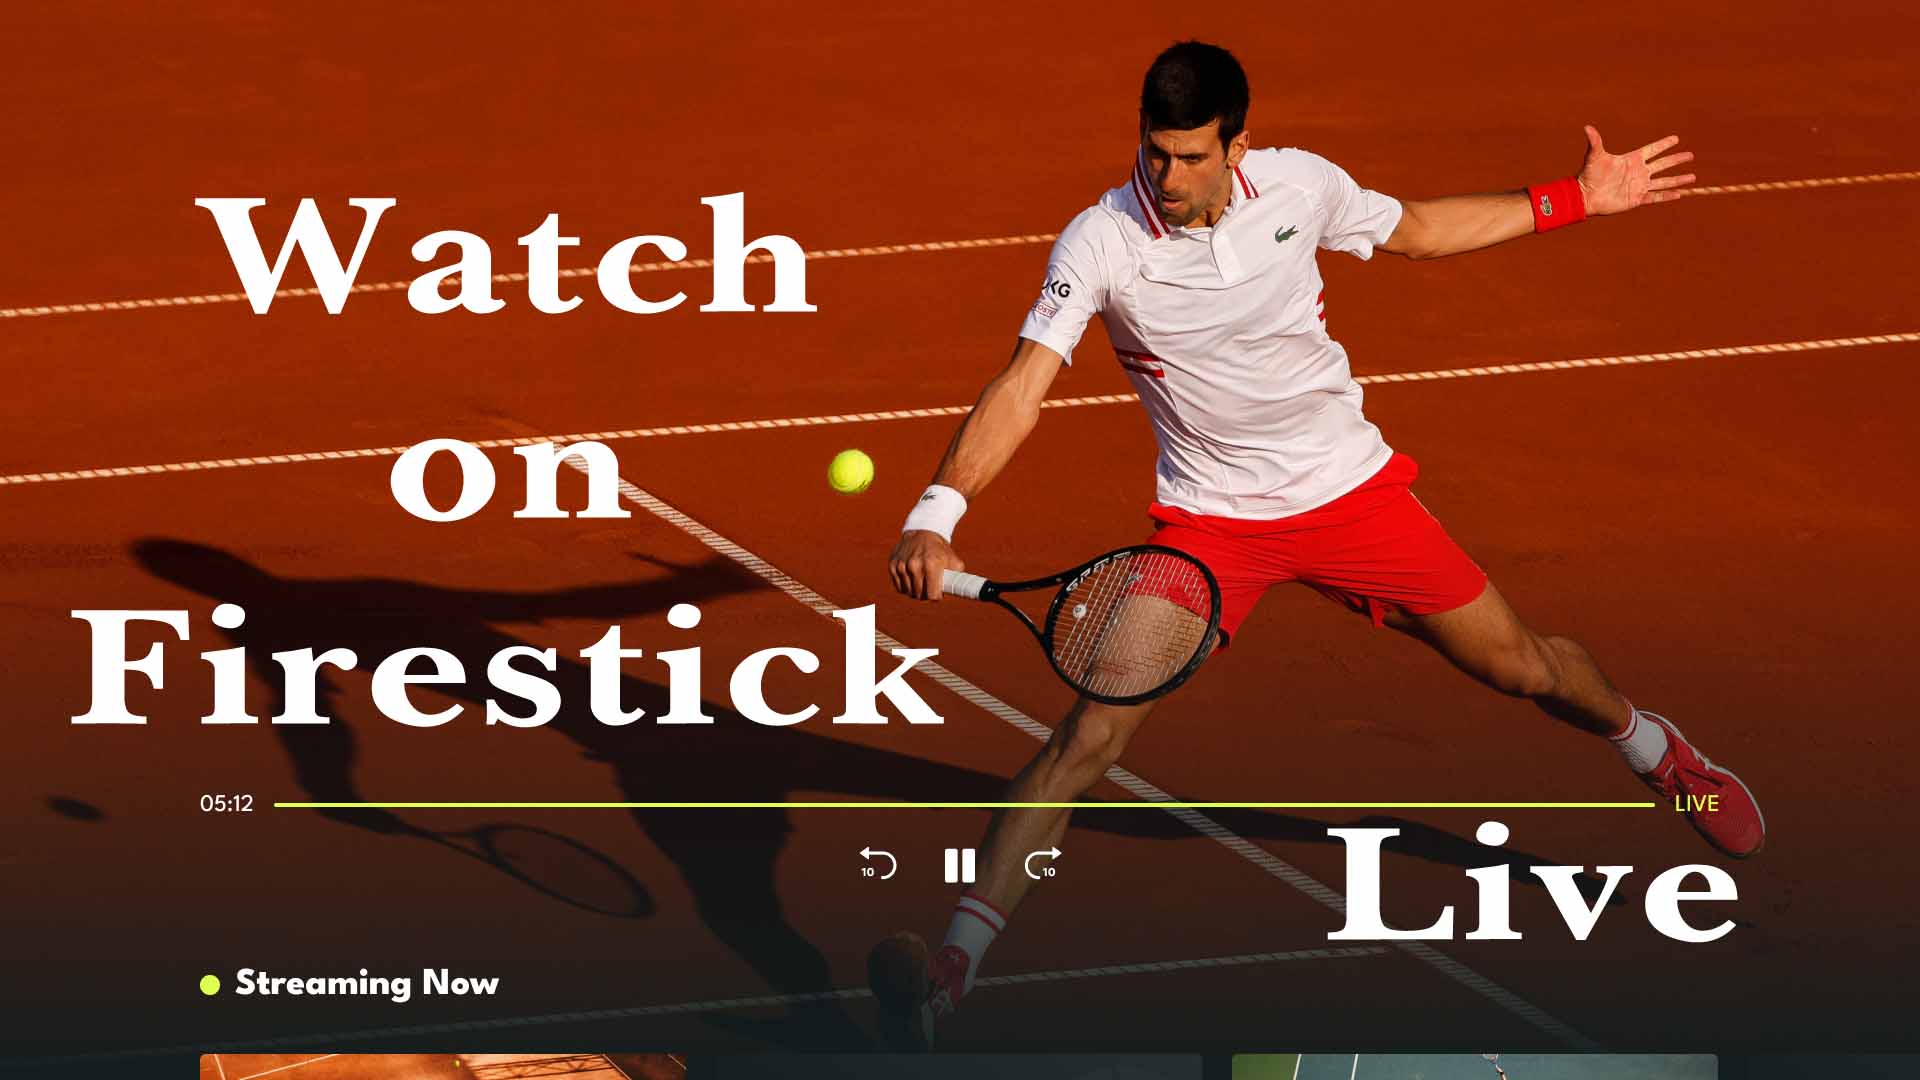 Watch Tennis grand slams on Firestick